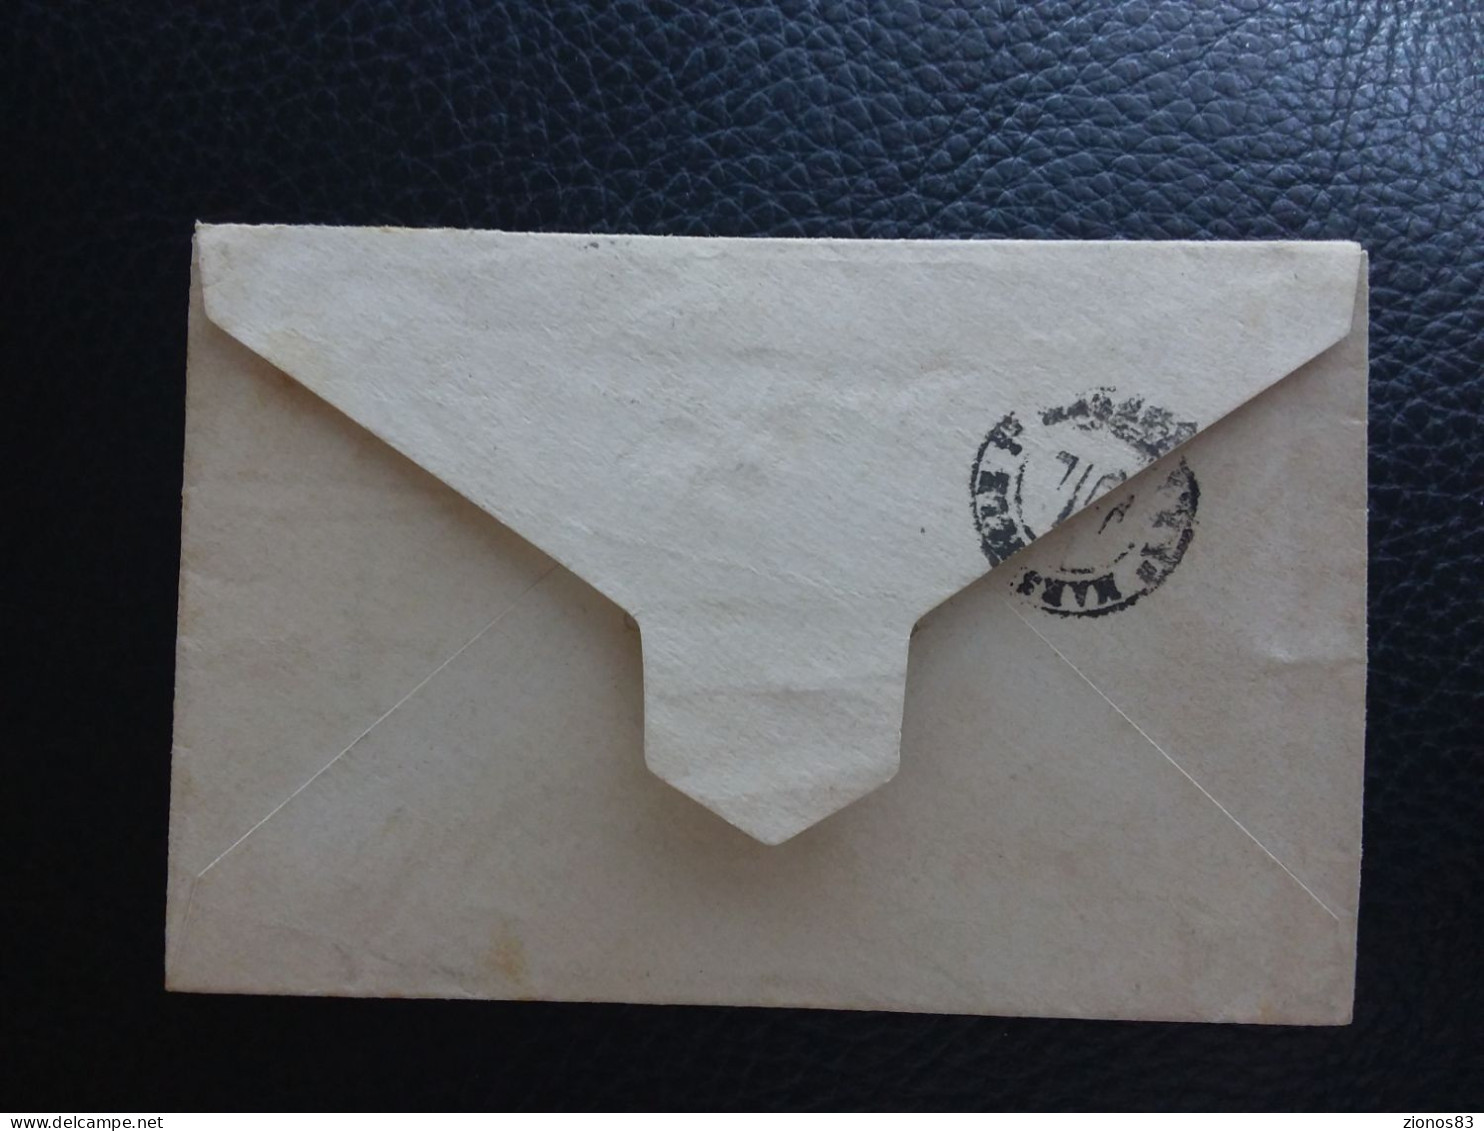 Petite Enveloppe N° 36 Et Entier Postal Destination France 1894 - 1866-1914 Khédivat D'Égypte